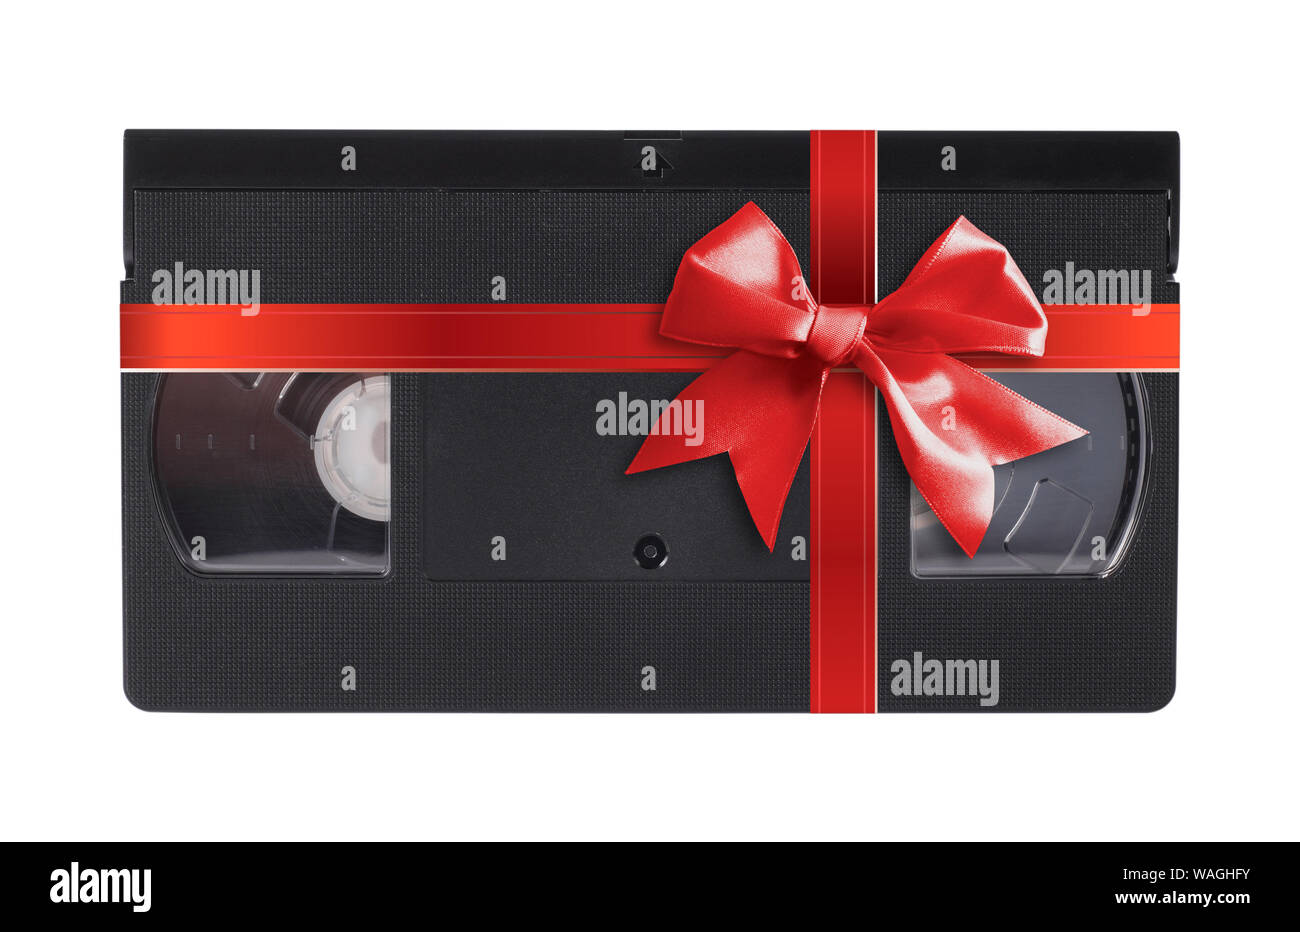 Vieux, cassette vidéo VHS obsolètes liées cadeau arc rouge sur un fond blanc. Isolé Banque D'Images